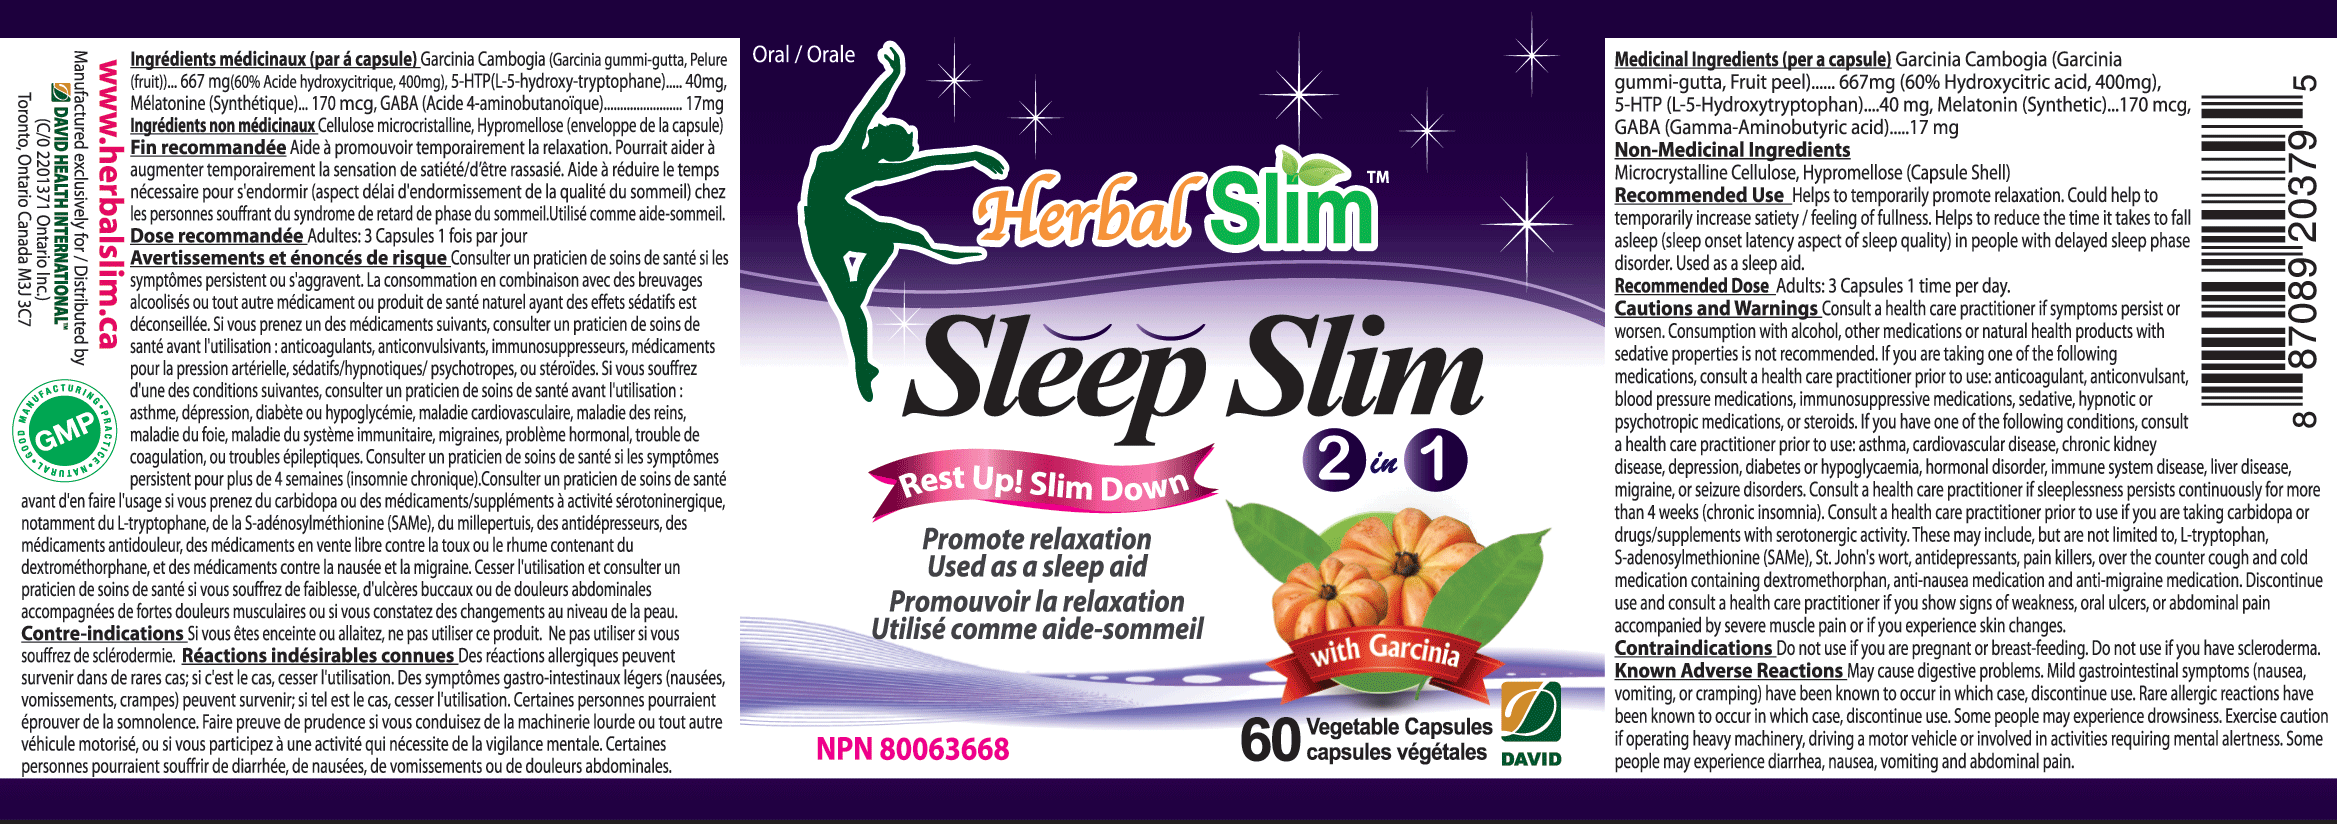 HerbalSlim Sleep Slim